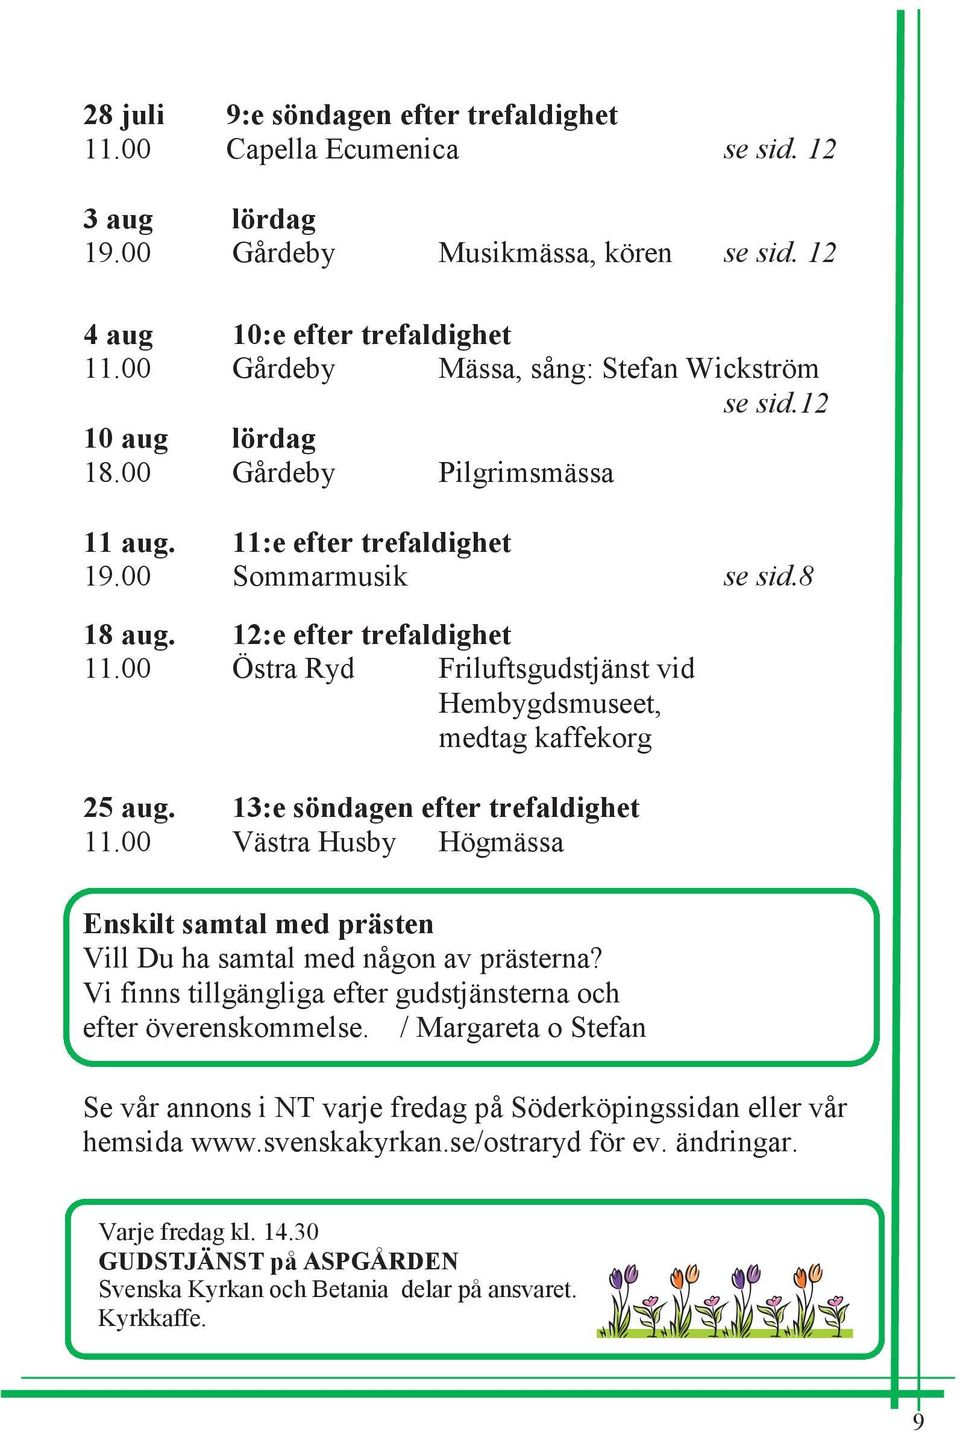 00 Östra Ryd Friluftsgudstjänst vid Hembygdsmuseet, medtag kaffekorg 25 aug. 13:e söndagen efter trefaldighet 11.